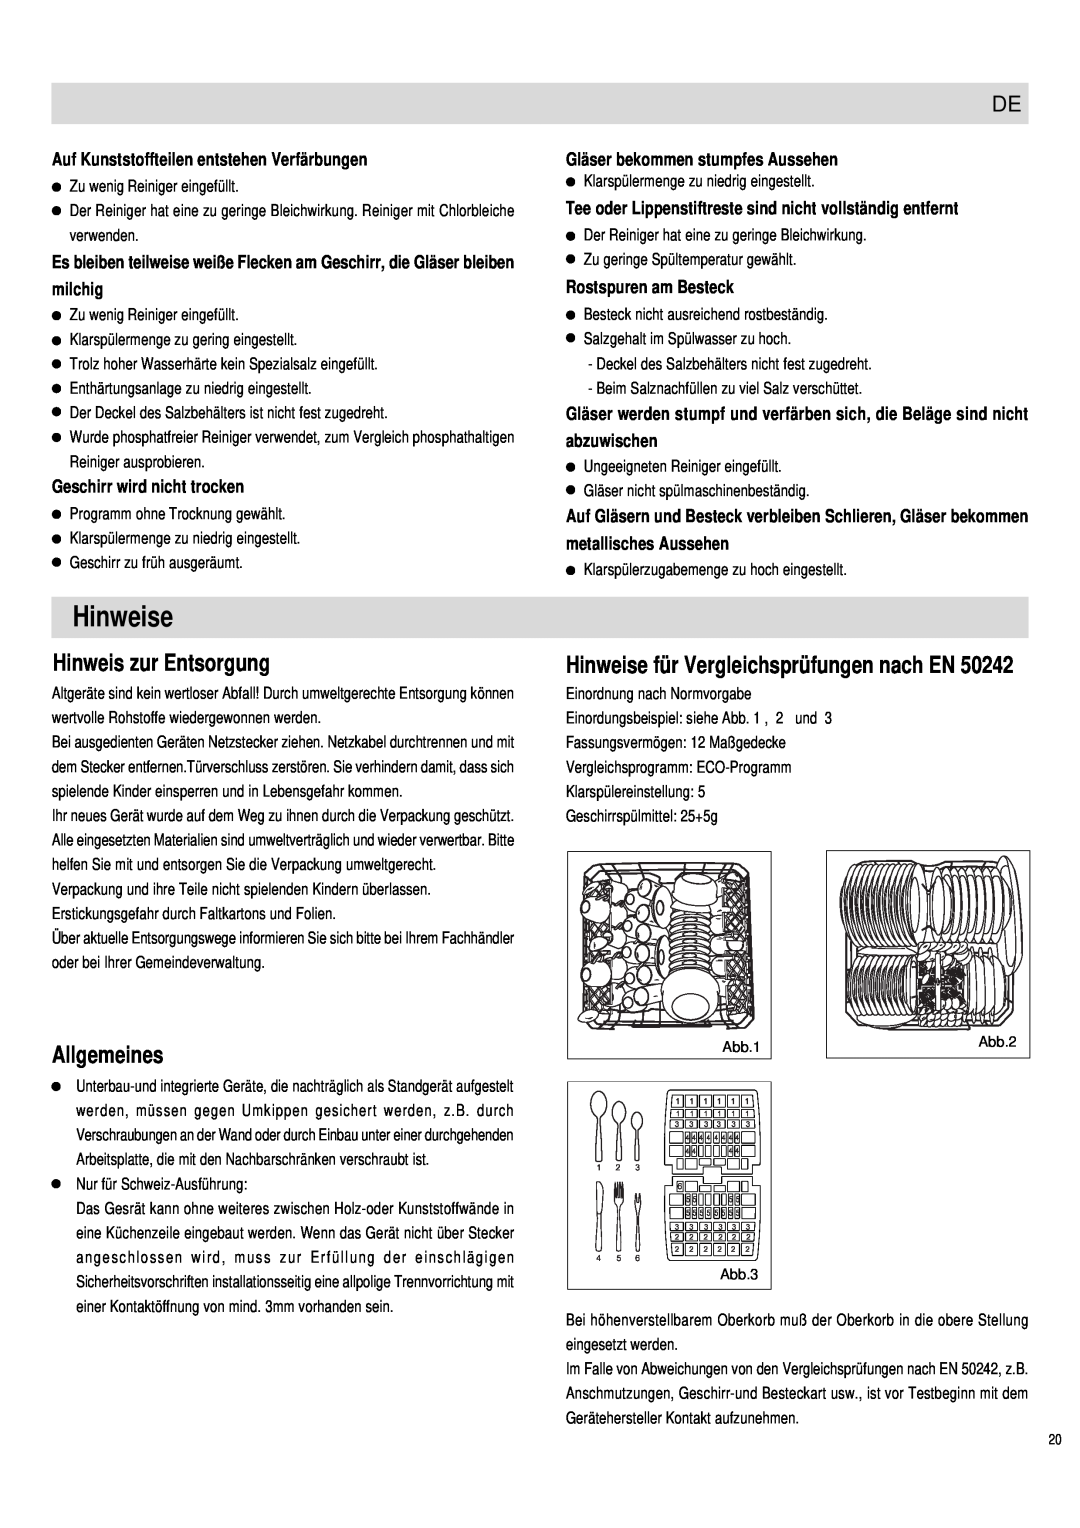 Haier DW12-PFE1 S, DW12-PFE1 ME manual Hinweis zur Entsorgung, Allgemeines, Hinweise für Vergleichsprüfungen nach EN 